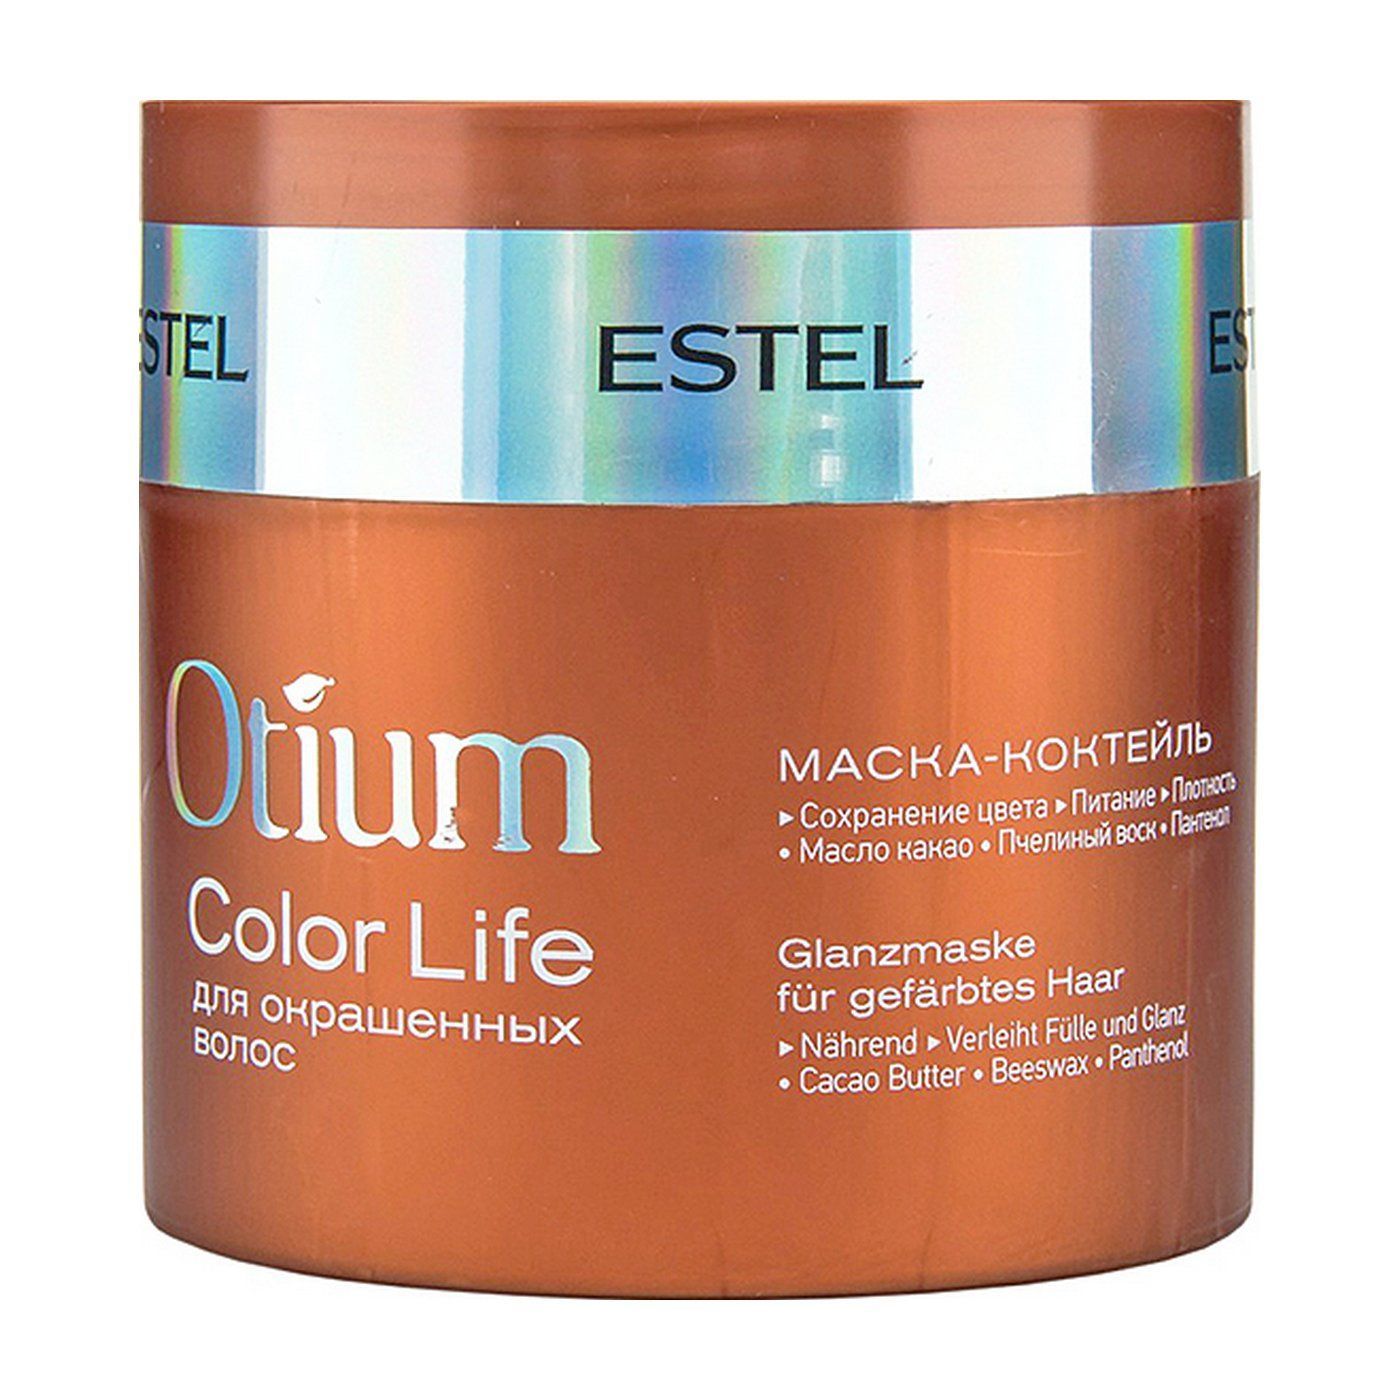 Маска для увлажнения волос отзывы. Estel Otium Color Life маска. Маска-коктейль для окрашенных волос Otium Color Life, 300 мл. Estel/ маска-коктейль для окрашенных волос Otium Color Life (300 мл). Маска Эстель отиум для окрашенных волос.